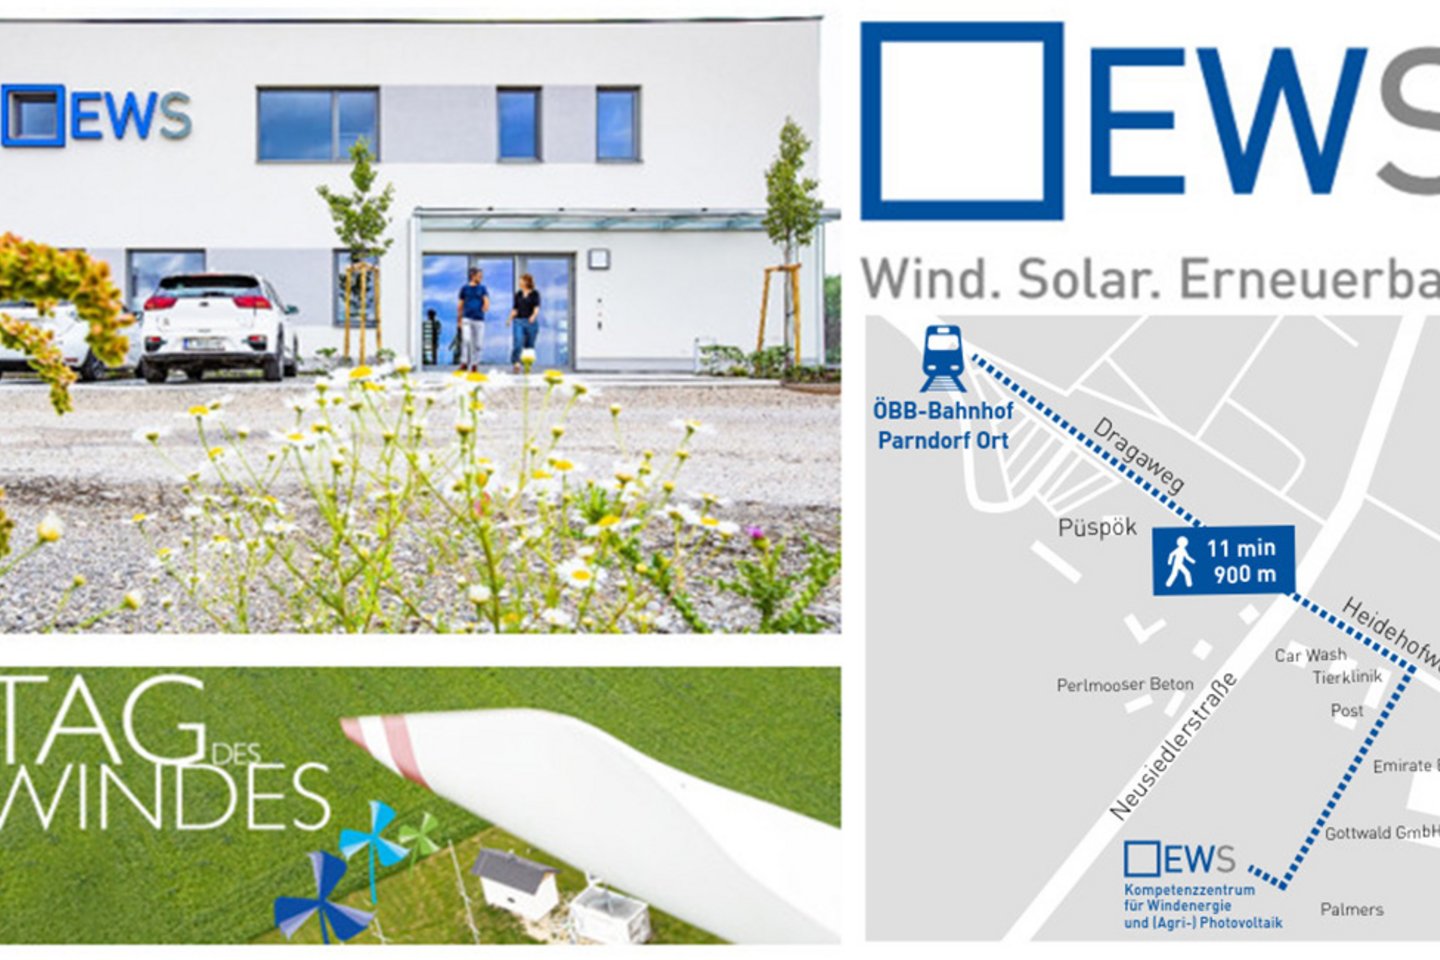 EWS Kompetenzzentrum für Windenergie und Agri-Photovoltaik